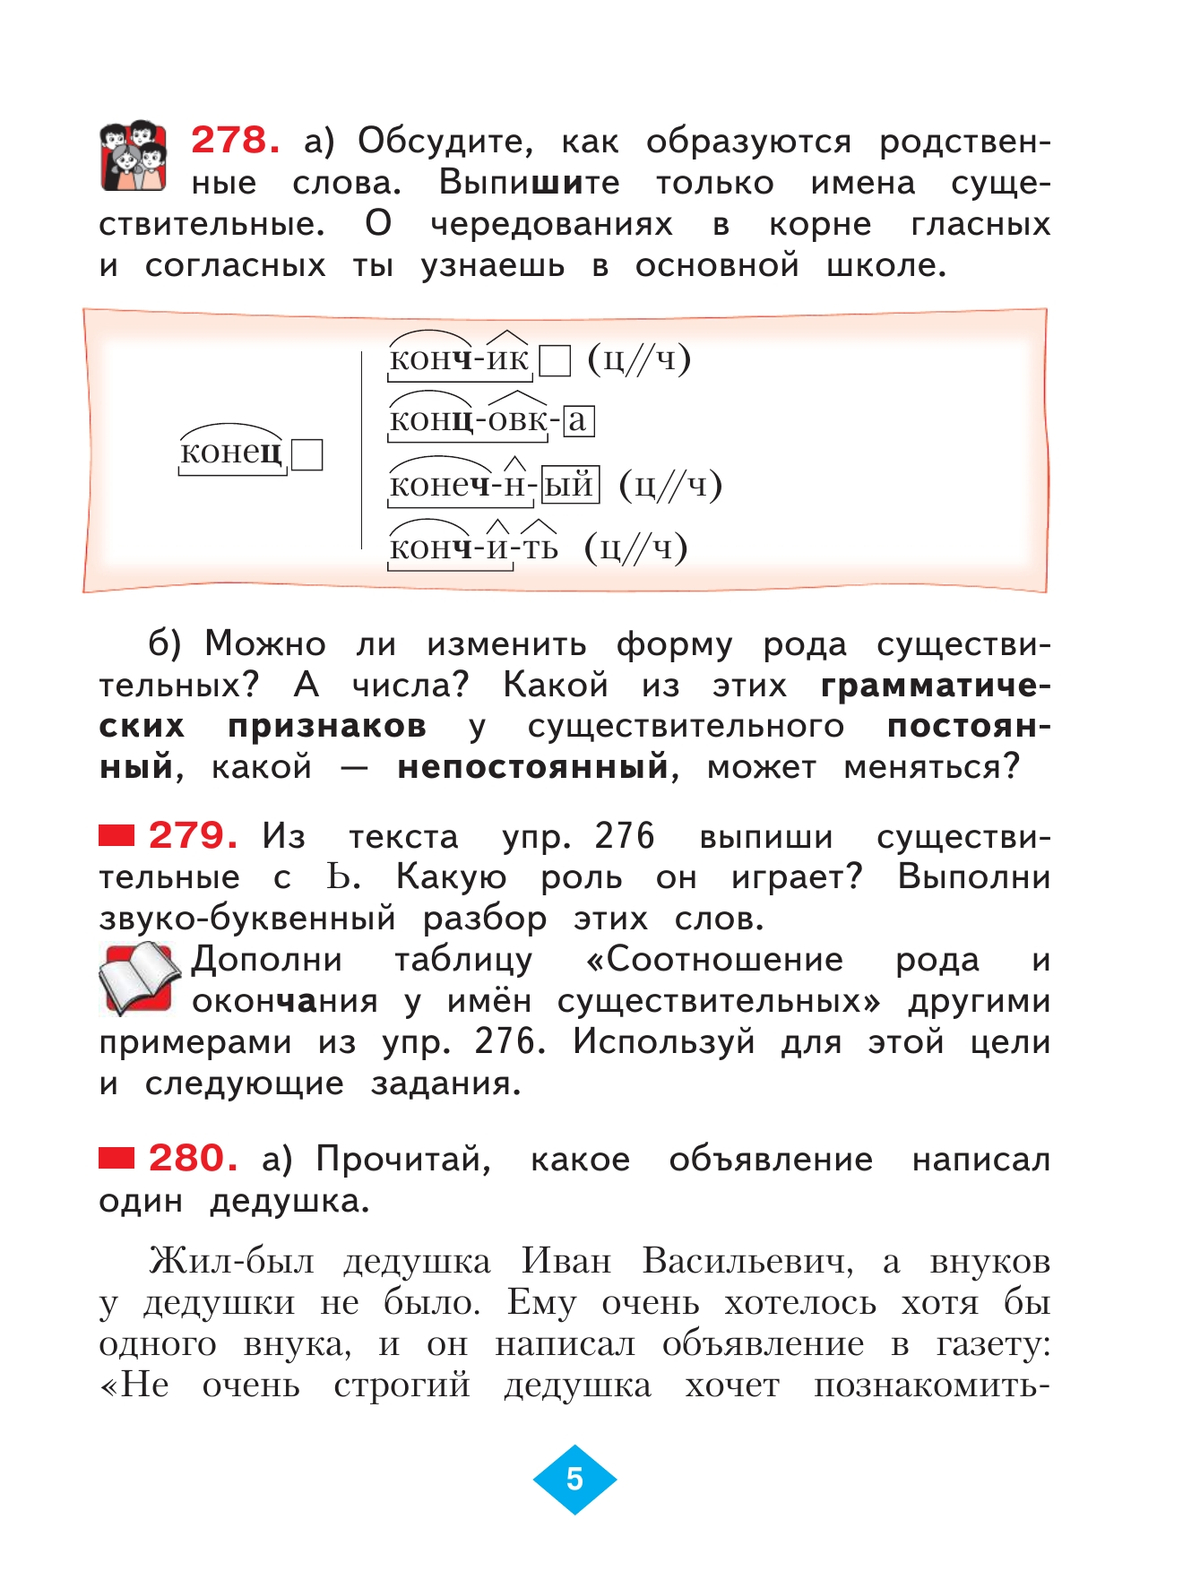 Русский язык. 3 класс. Учебник. В 2 ч. Часть 2 9